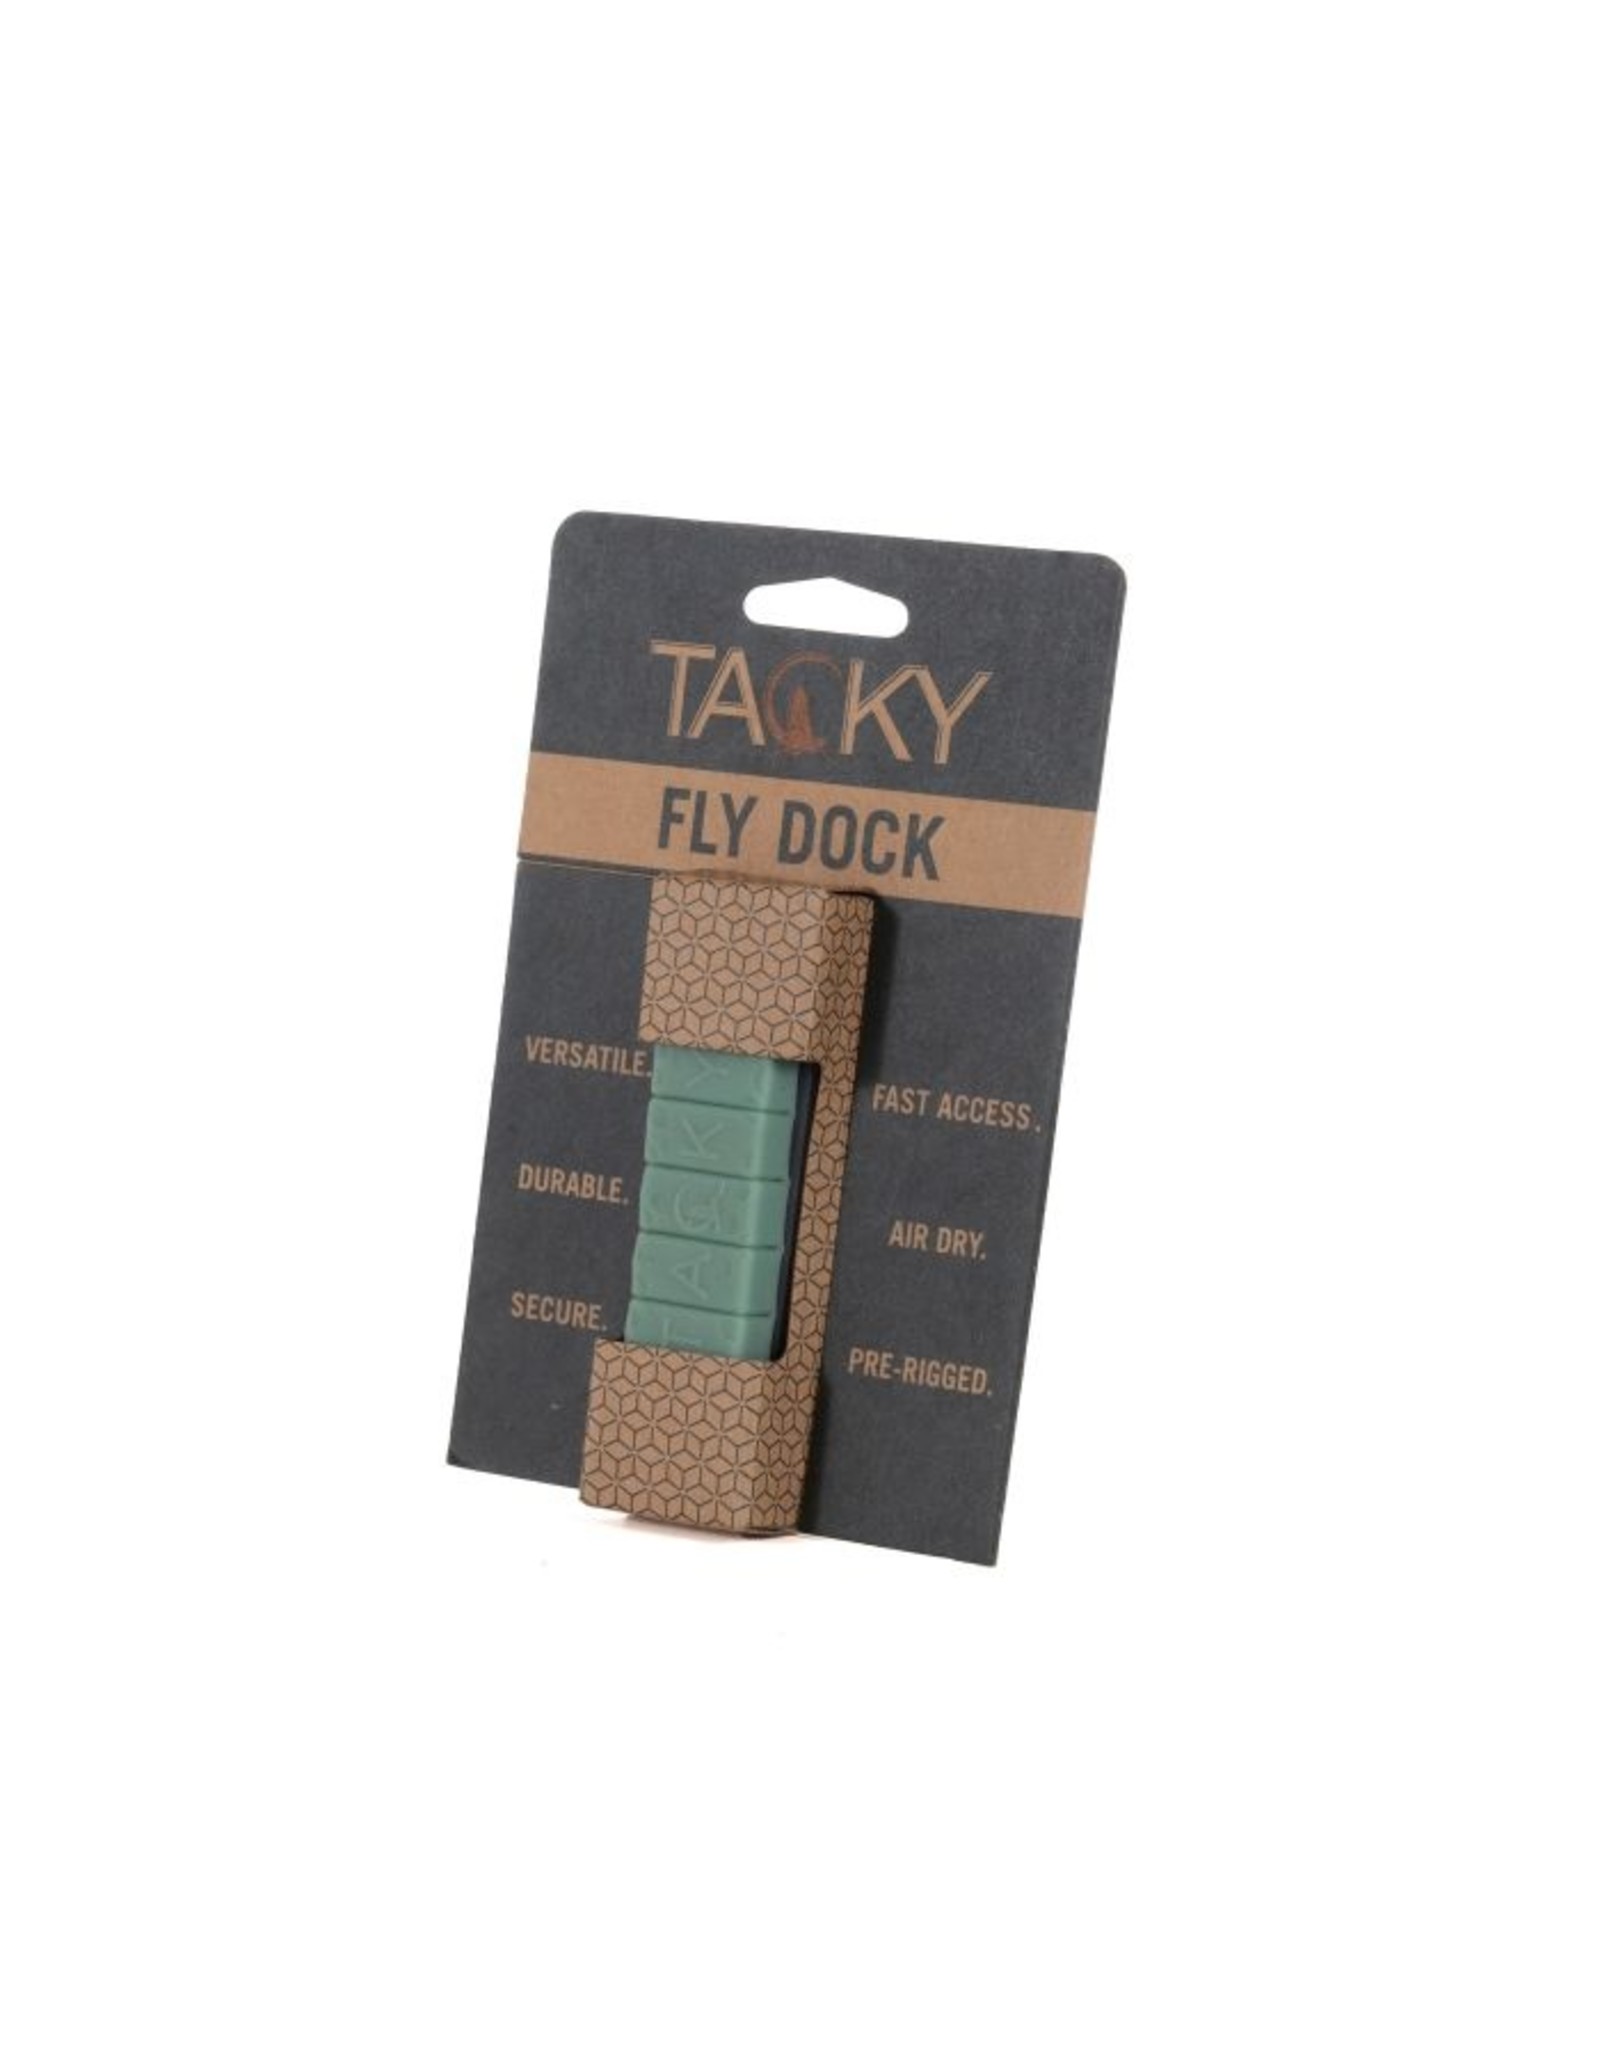 FISHPOND Tacky Fly Dock 2.0